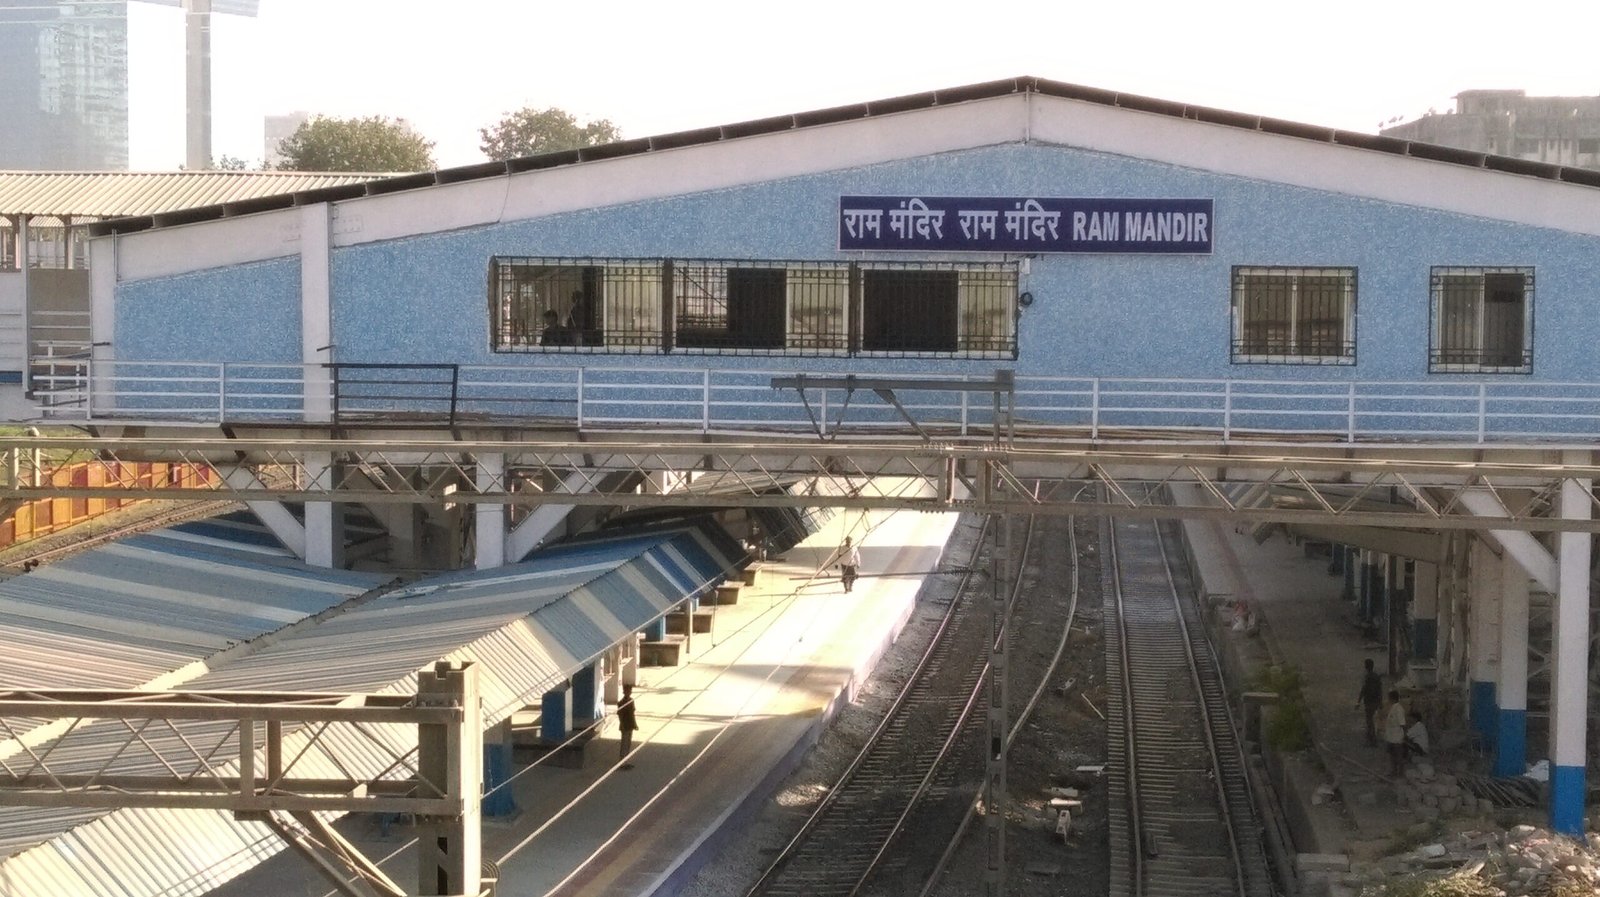 Ram Mandir Station